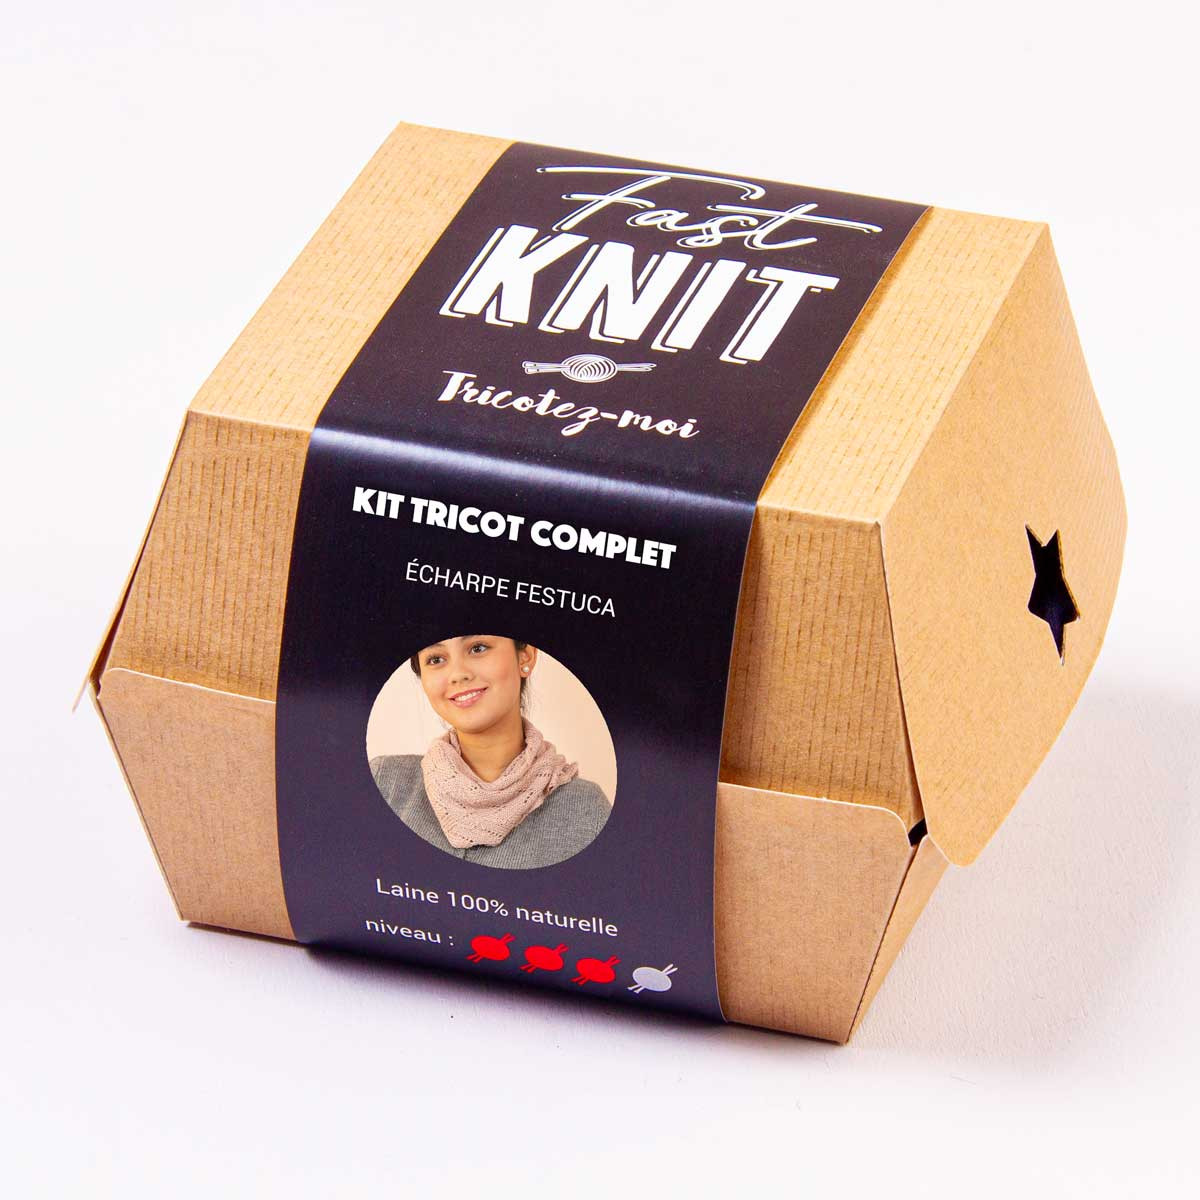 Écharpe Festuca - Fast Knit Box Tricot